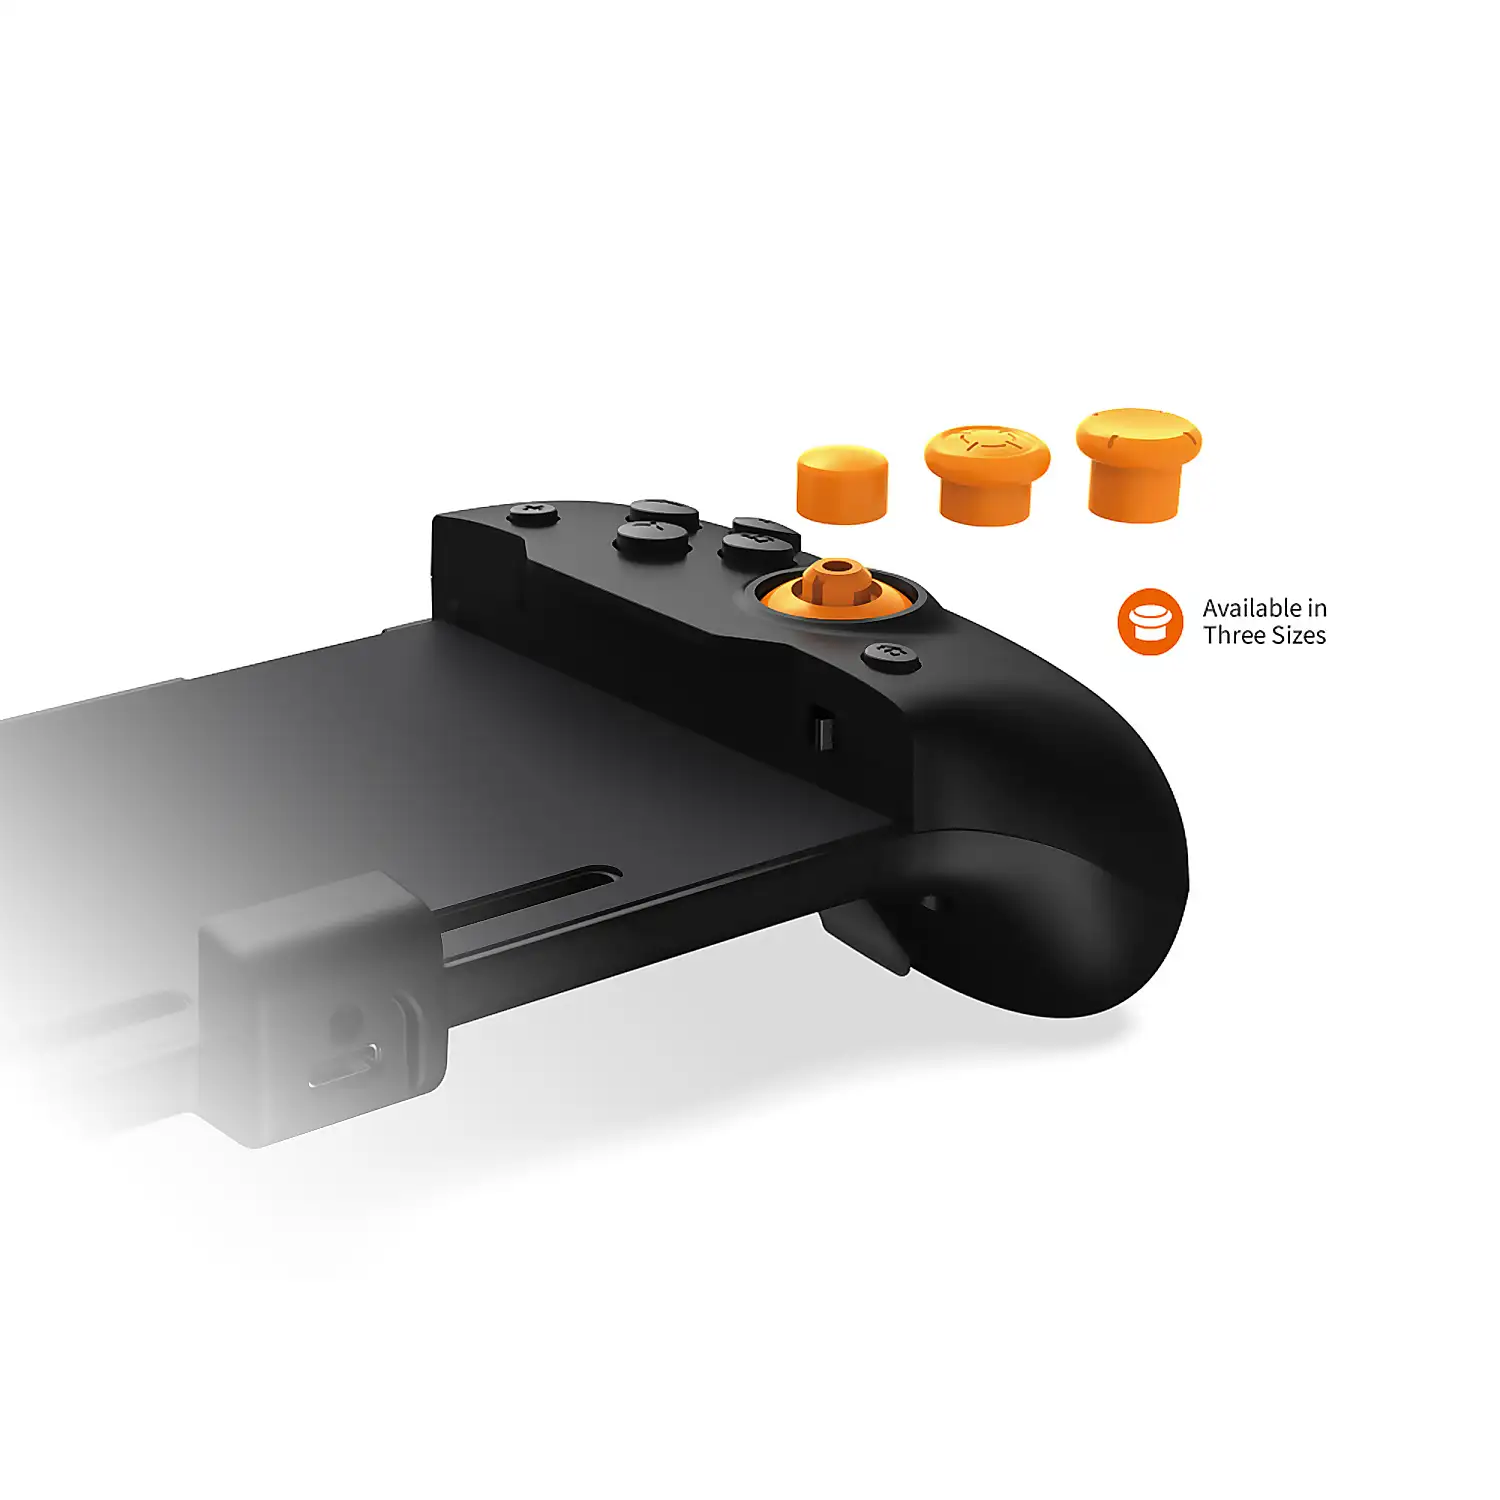 Mando Grip compatible con Nintendo Switch TNS-1125. Conexión auto, funciones mapping, motores de vibración, sensores giroscópicos